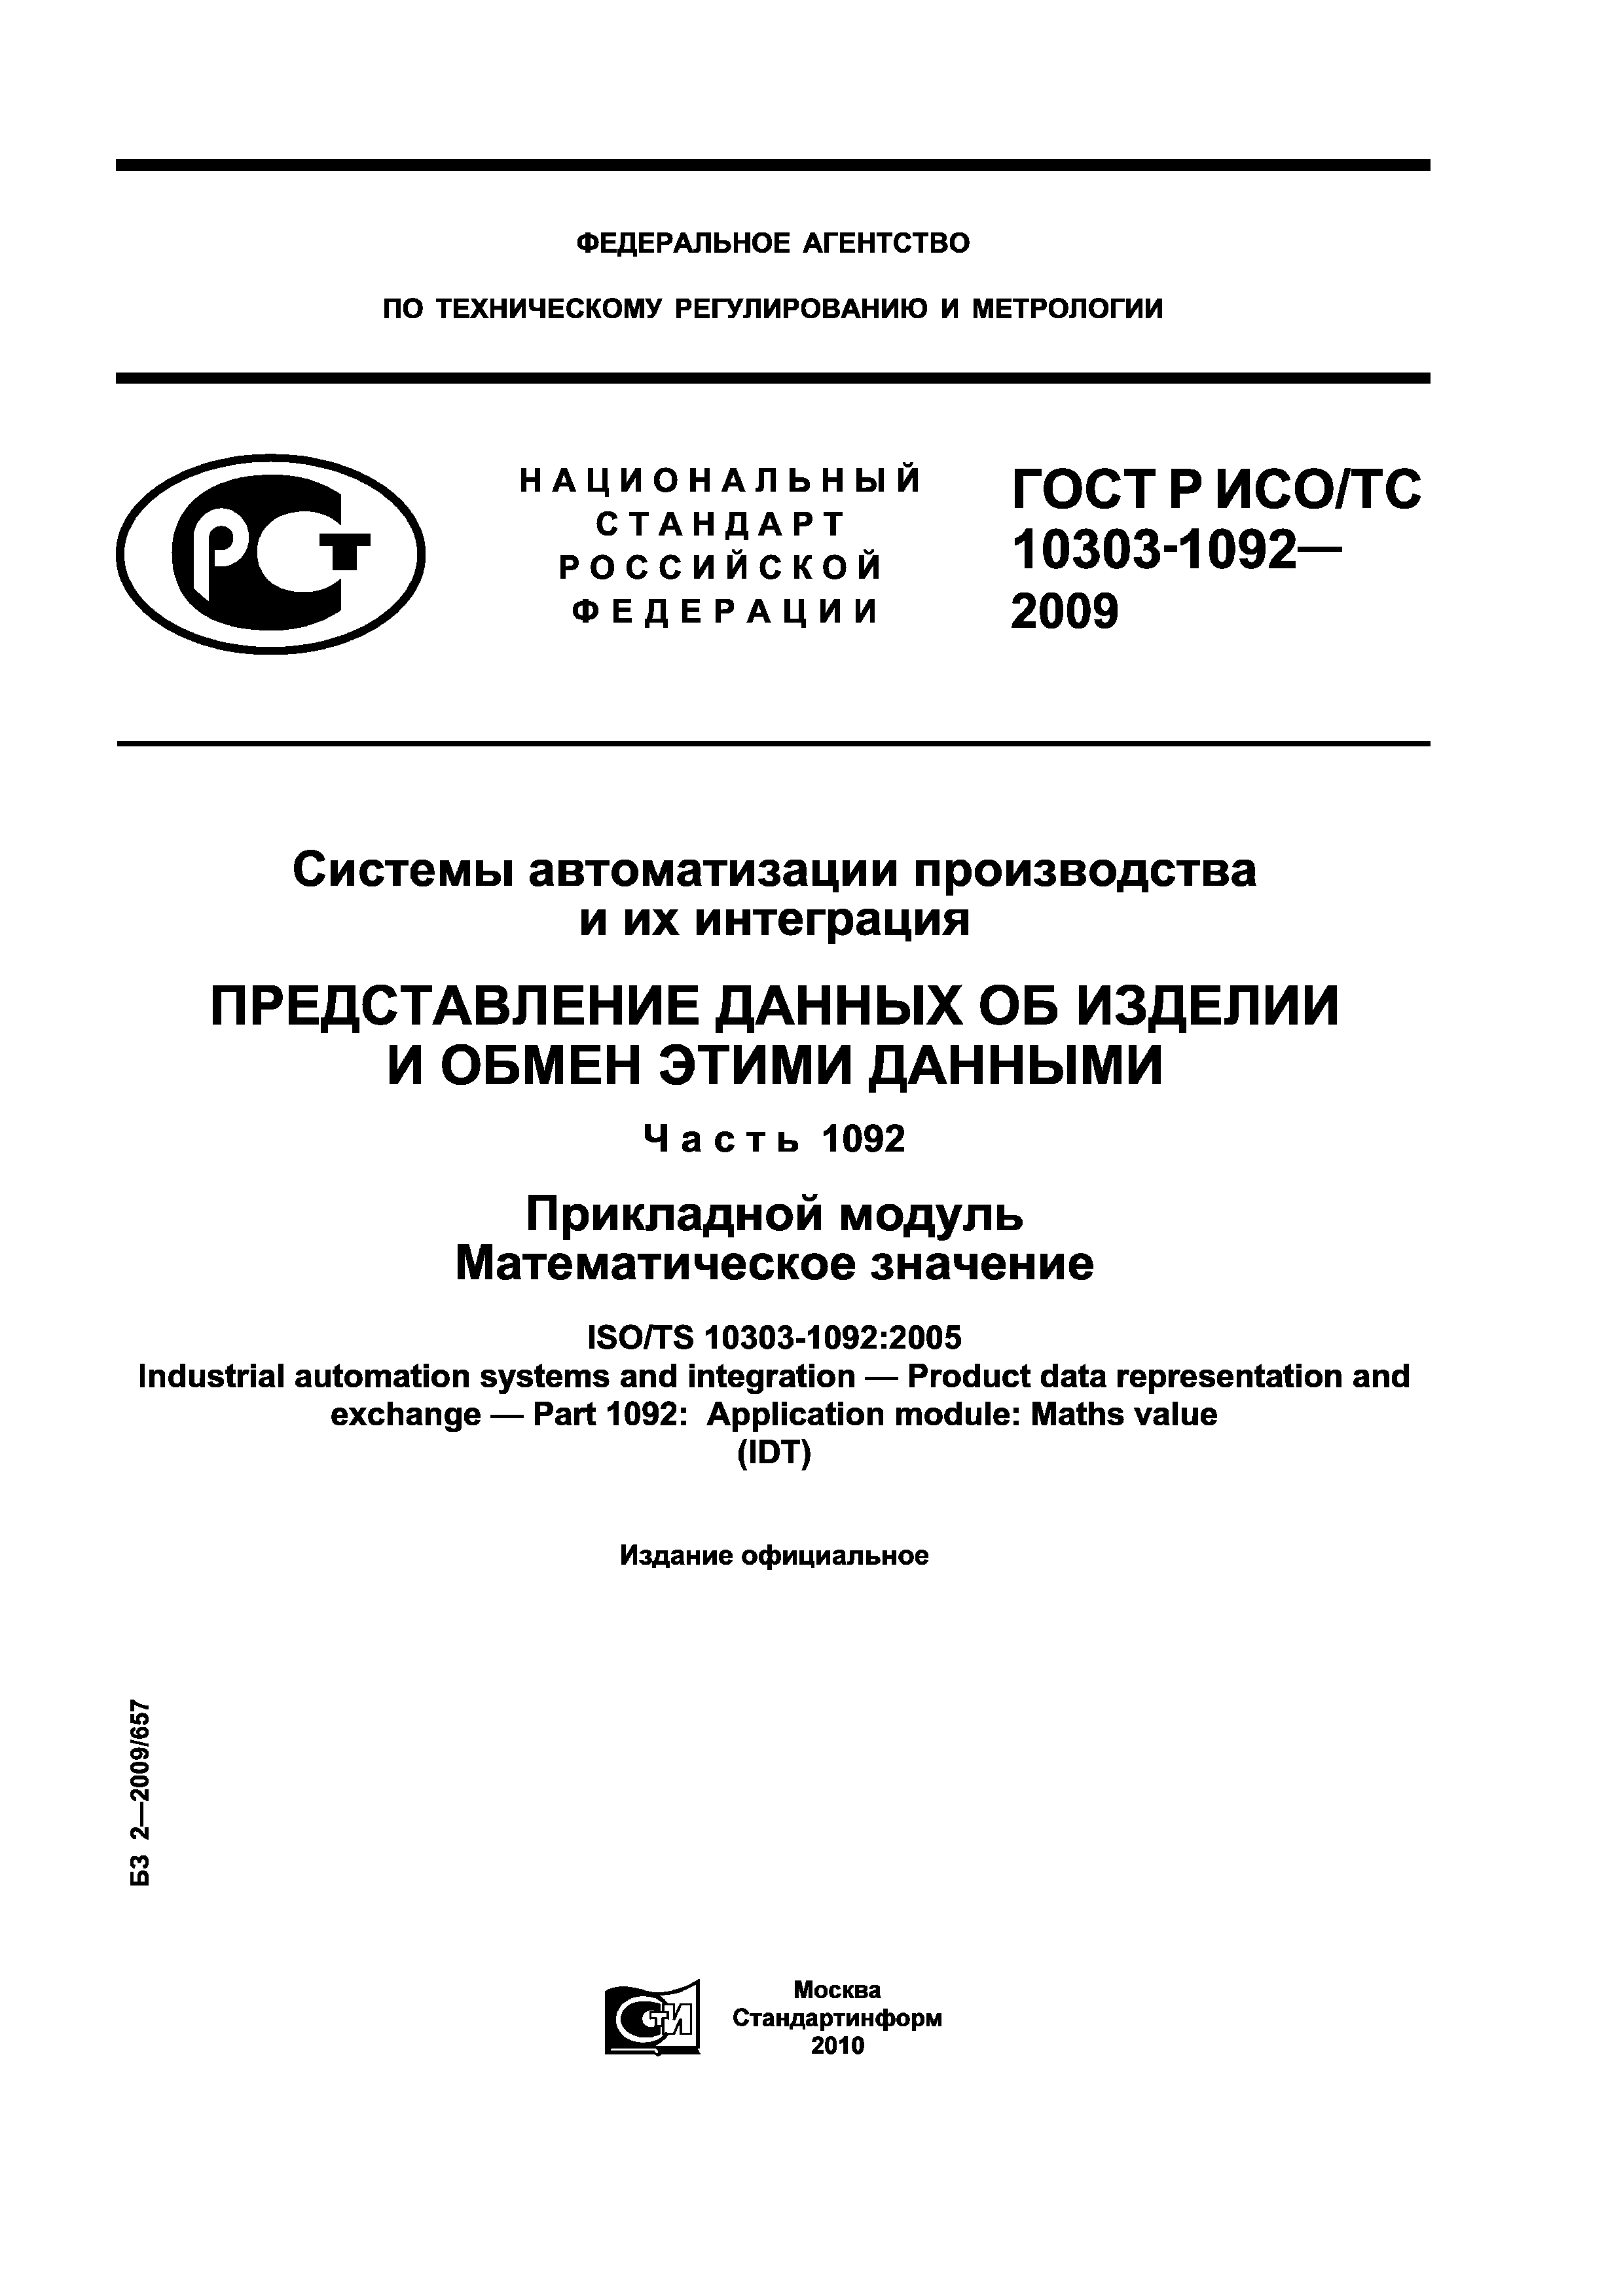 ГОСТ Р ИСО/ТС 10303-1092-2009